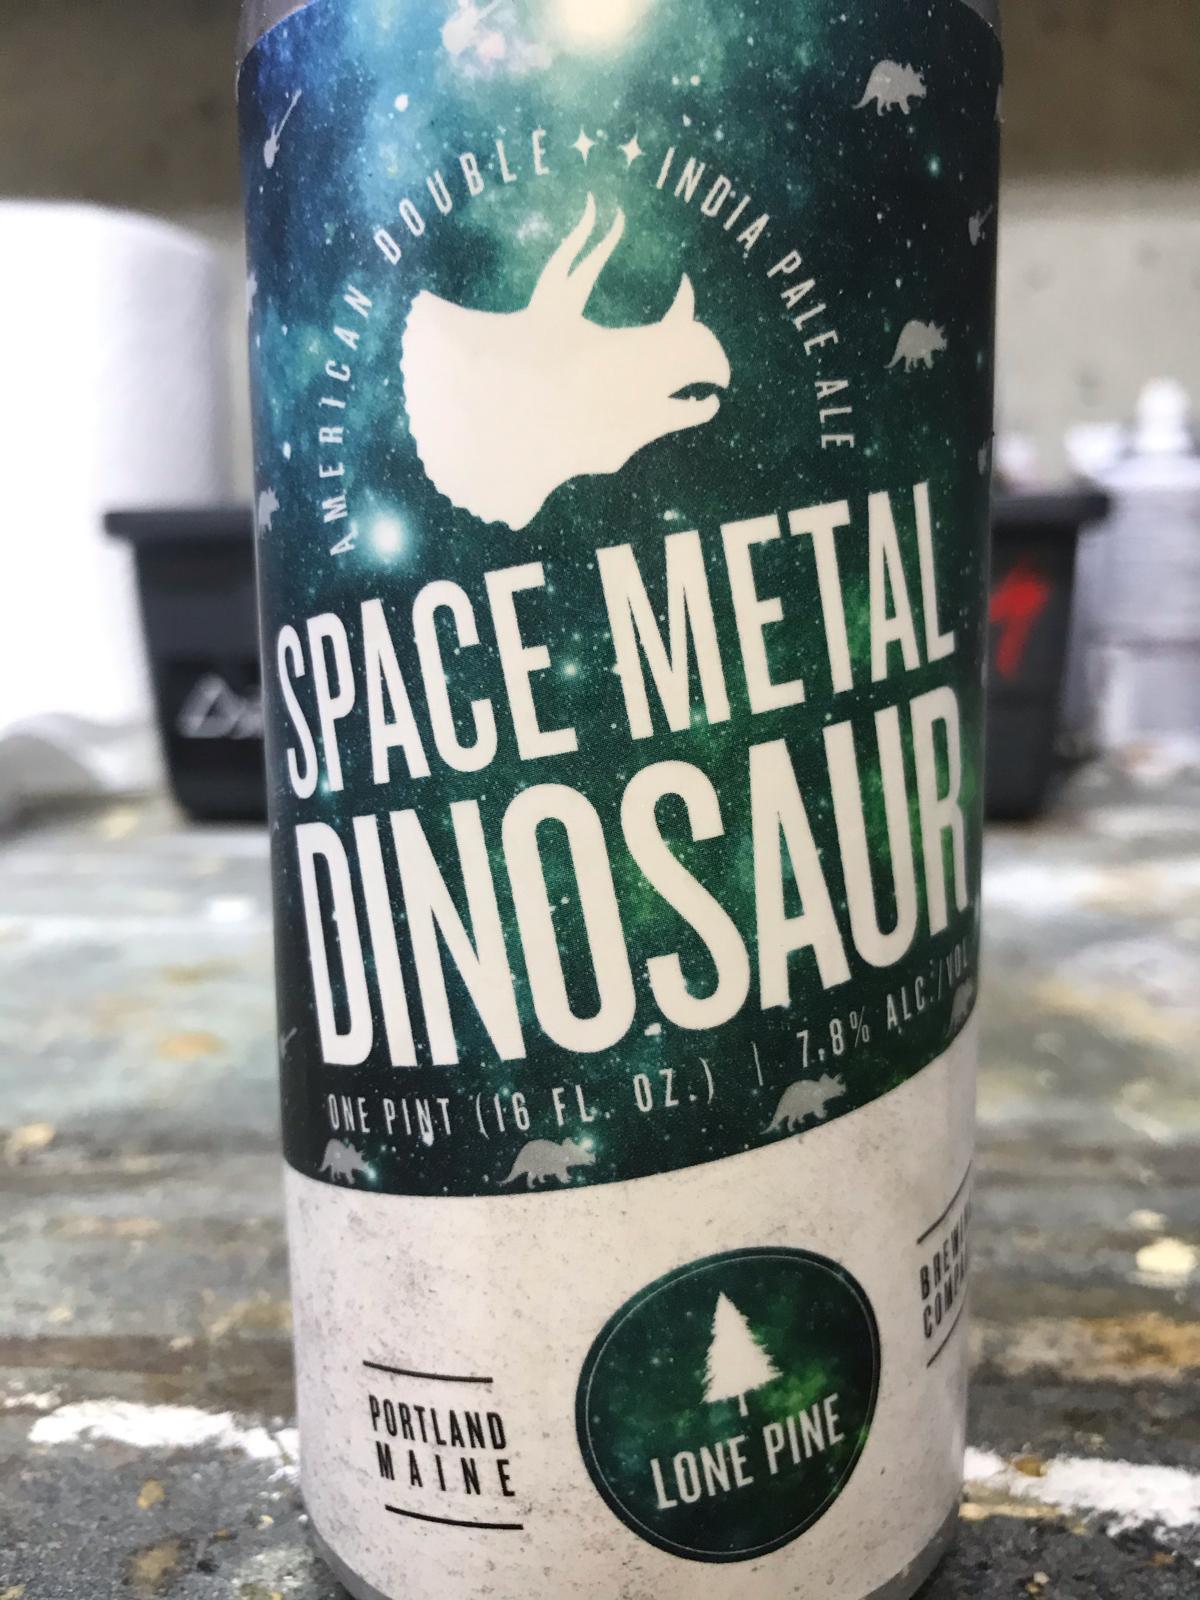 Space Metal Dinosaur